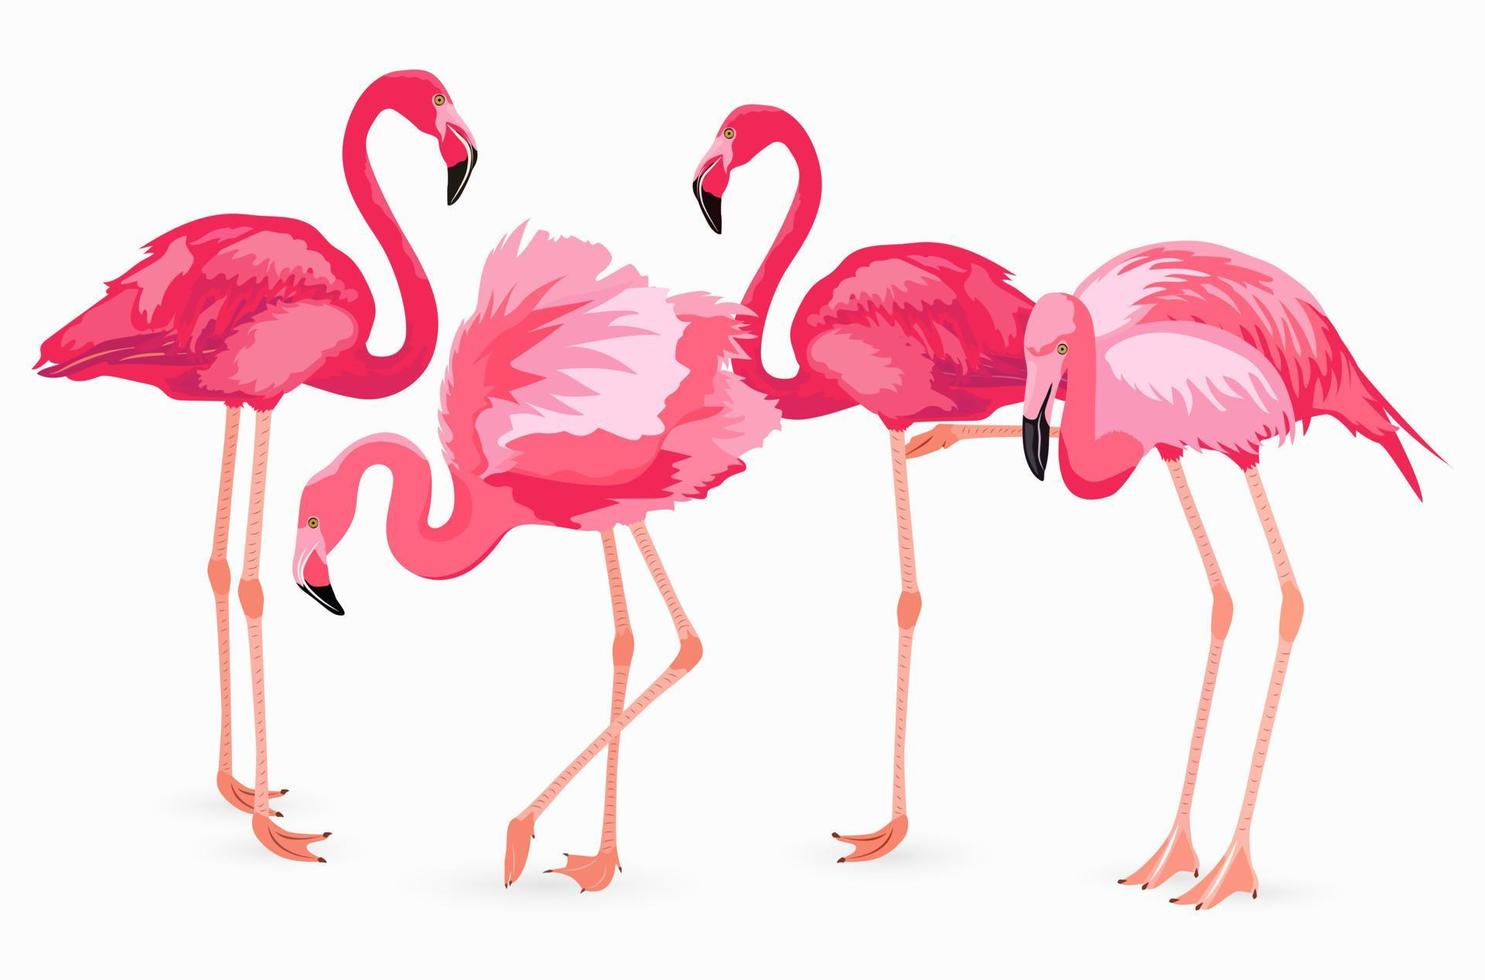 colección de flamencos. vector elementos aislados sobre fondo blanco. flamencos rosados en diferentes poses. ilustración vectorial